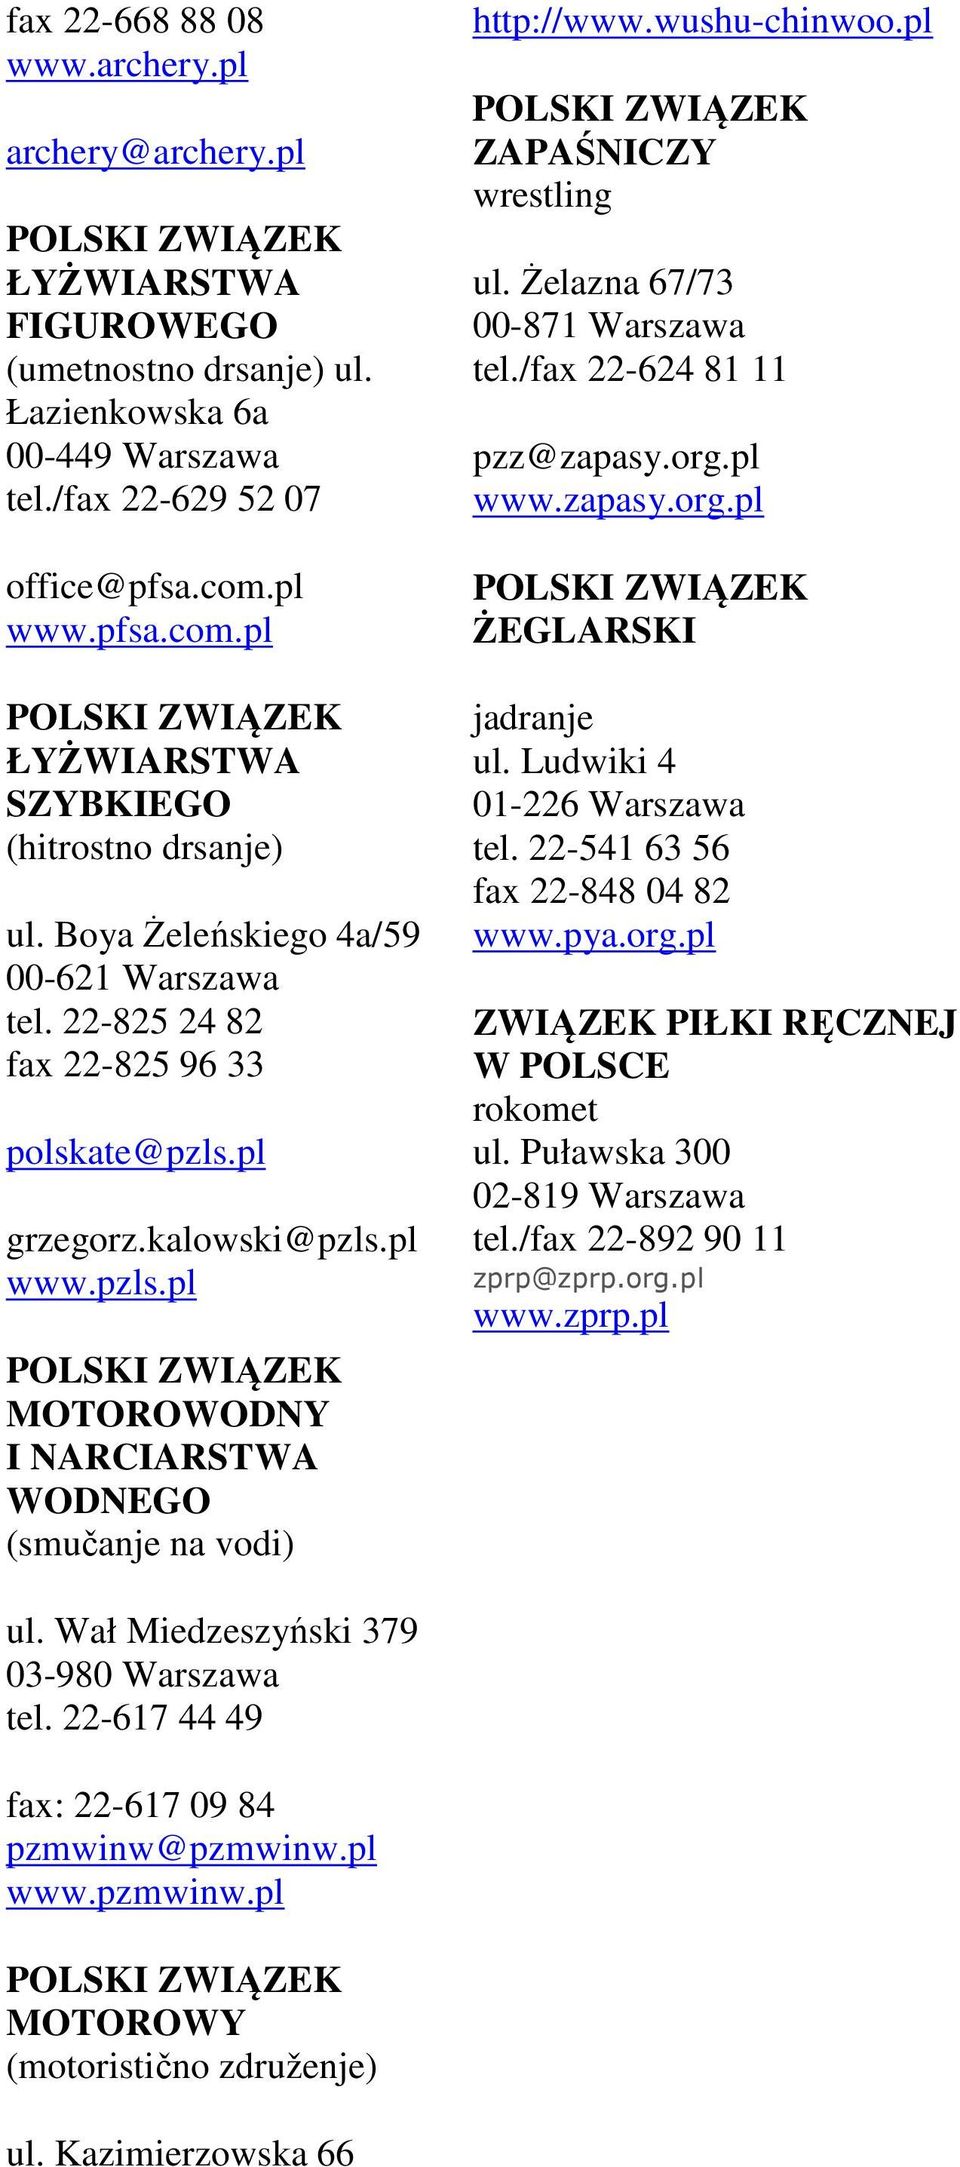 pl grzegorz.kalowski@pzls.pl www.pzls.pl MOTOROWODNY I NARCIARSTWA WODNEGO (smučanje na vodi) http://www.wushu-chinwoo.pl ZAPAŚNICZY wrestling ul. Żelazna 67/73 00-871 Warszawa tel.